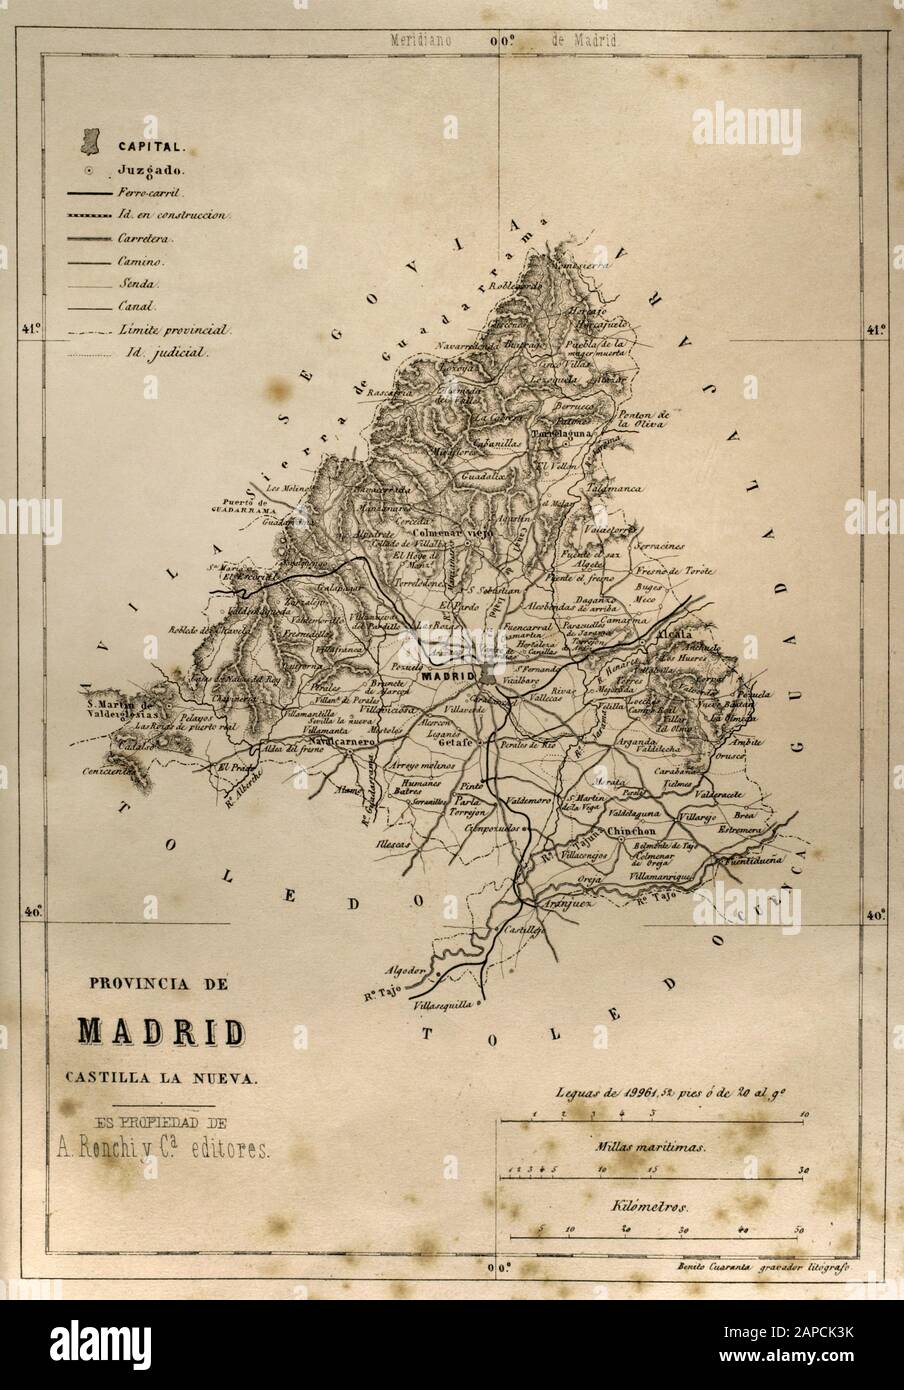 Spagna. Mappa della provincia di Madrid. Cronica General de Espana, Historia Ilustrada y Descriptiva de sus Provincias. Castilla-La Nueva, 1869. Foto Stock